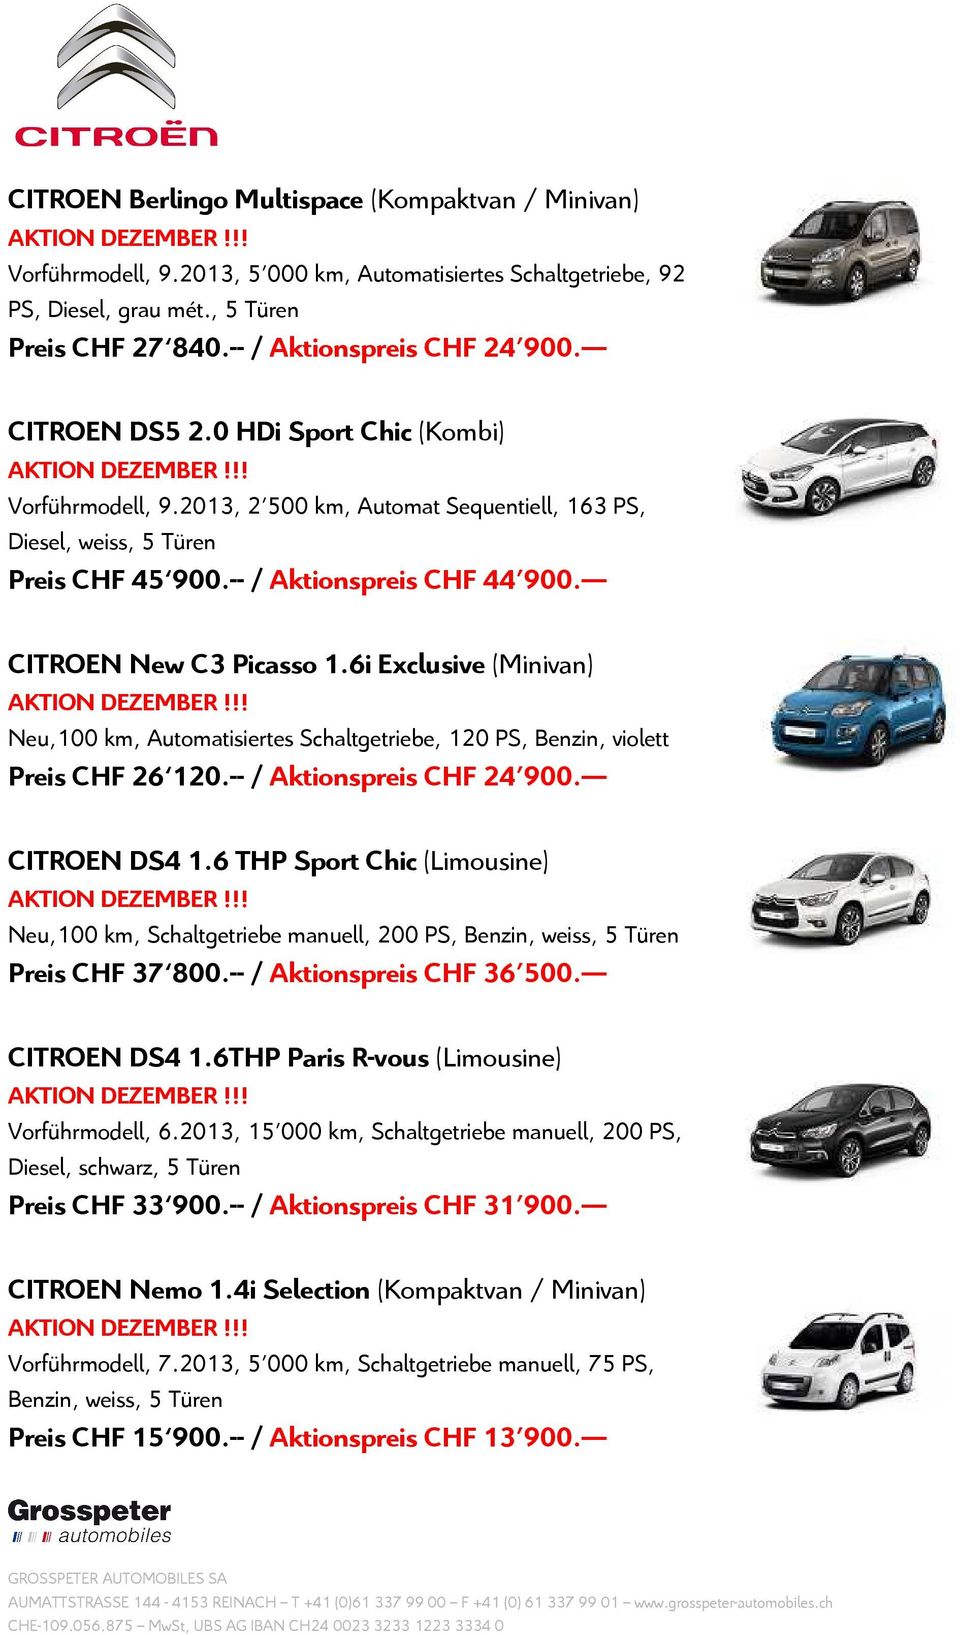 6i Exclusive (Minivan) Neu,100 km, Automatisiertes Schaltgetriebe, 120 PS, Benzin, violett Preis CHF 26 120.-- / Aktionspreis CHF 24'900. CITROEN DS4 1.